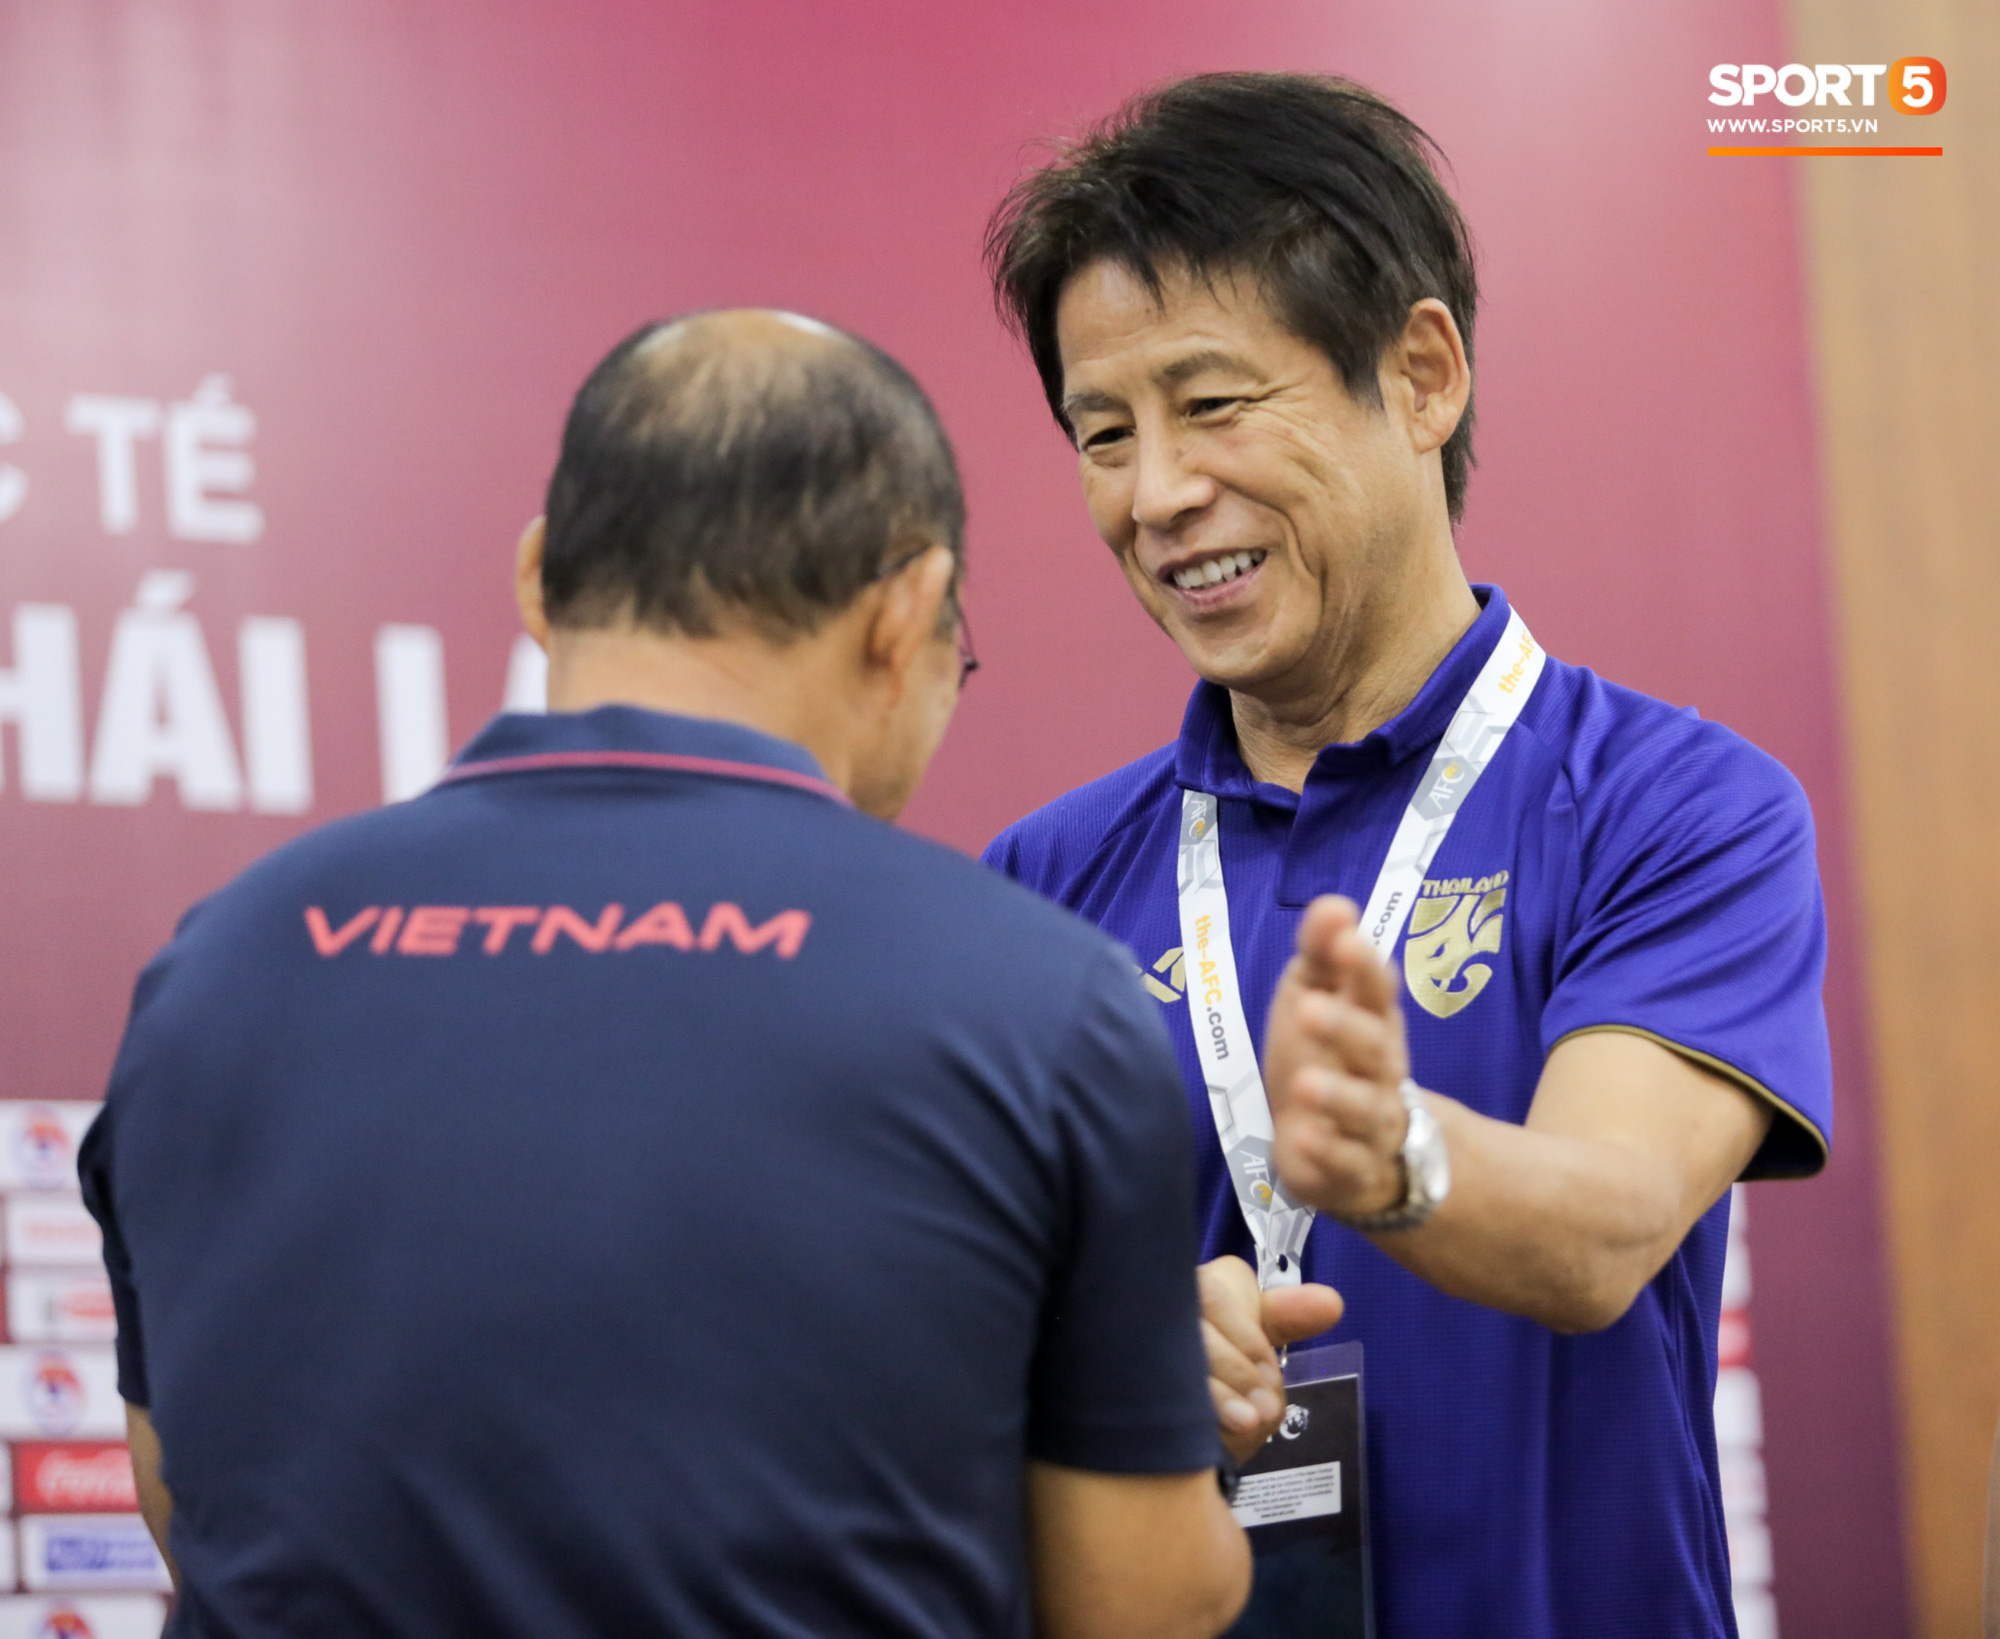 Thầy Park bị nhắc khéo sau khi kỳ phùng địch thủ ở tuyển Thái Lan đồng ý giảm nửa lương vì Covid-19 - Ảnh 2.